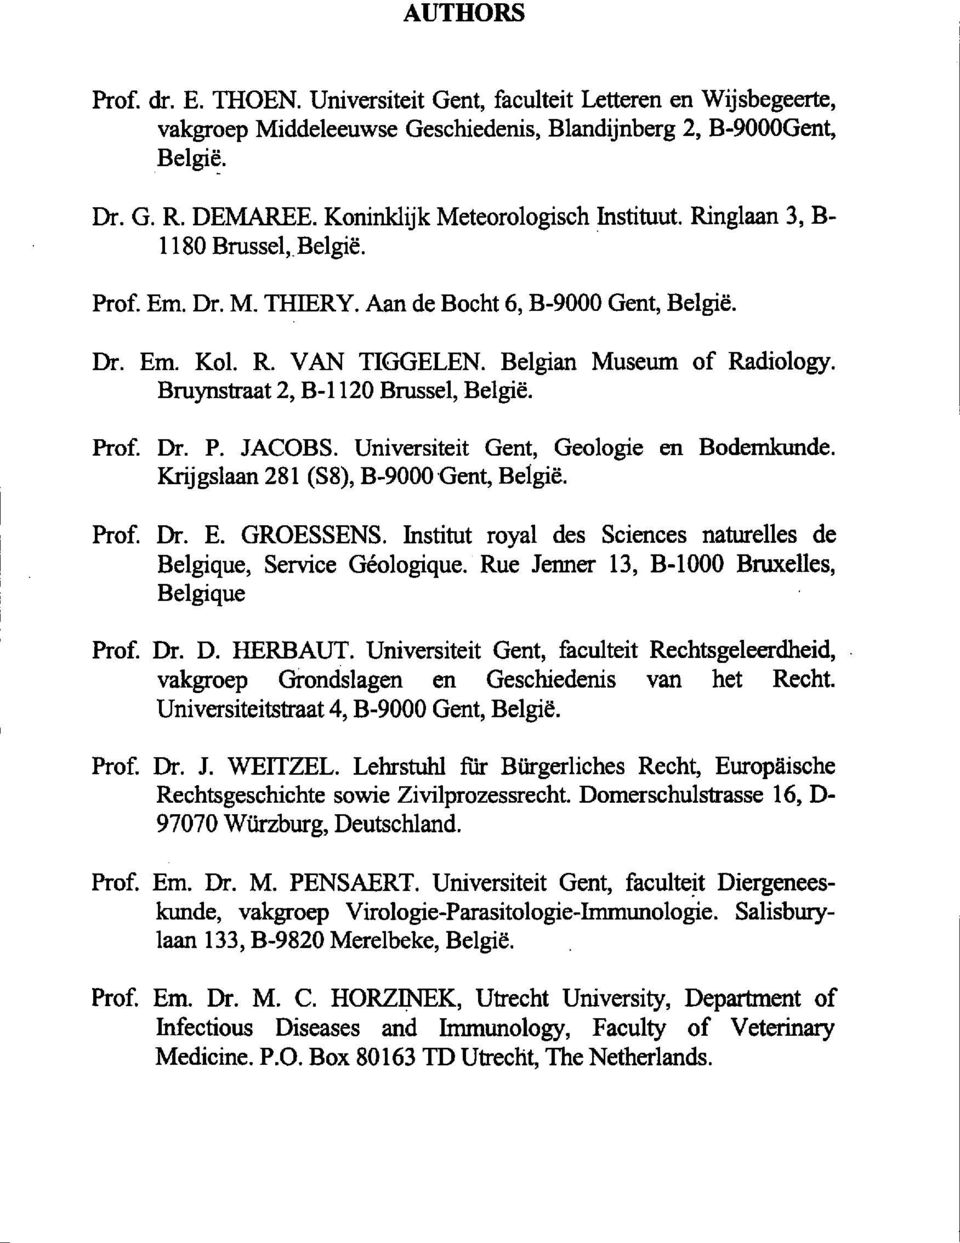 Bruynstraat 2, B-1120 Brussel, Belgie. Prof. Dr. P. JACOBS. Universiteit Gent, Geologie en Bodemkunde. Krijgslaan 281 (S8), B-9000 'Gent, Be1gie. Prof. Dr. E. GROESSENS.